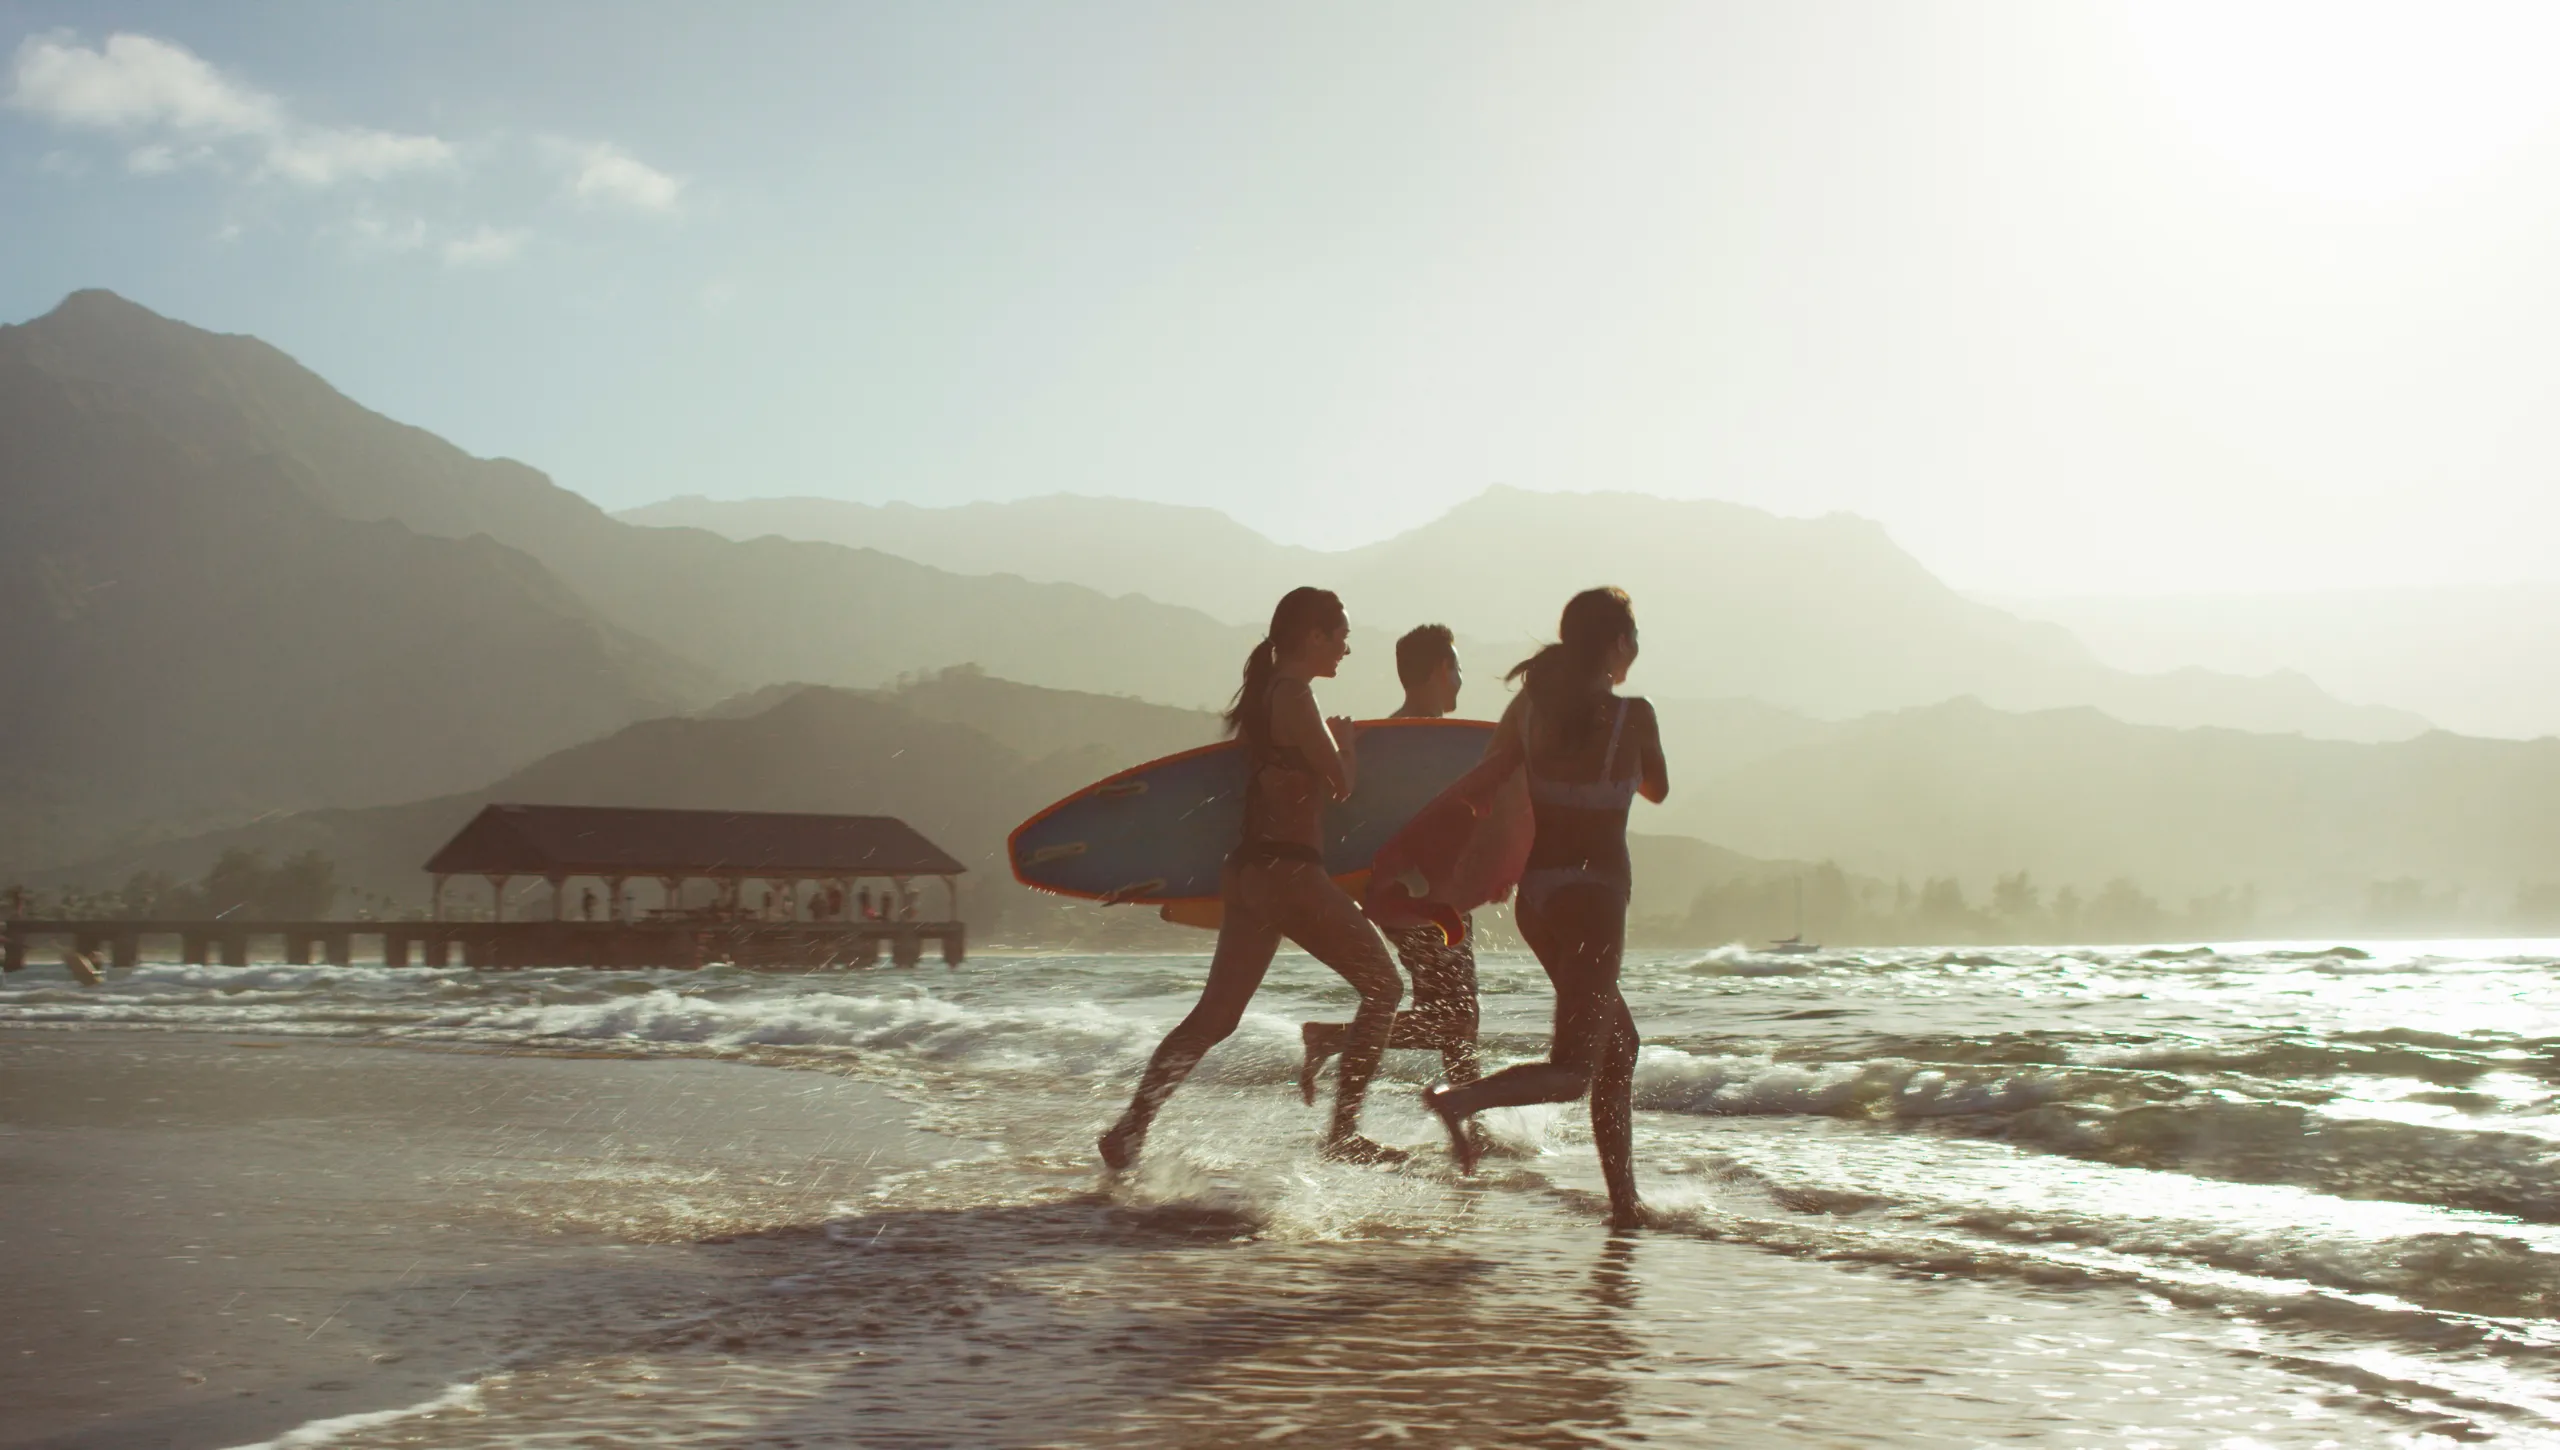 1 Mann und 2 Frauen laufen mit Surfboard ins wasser